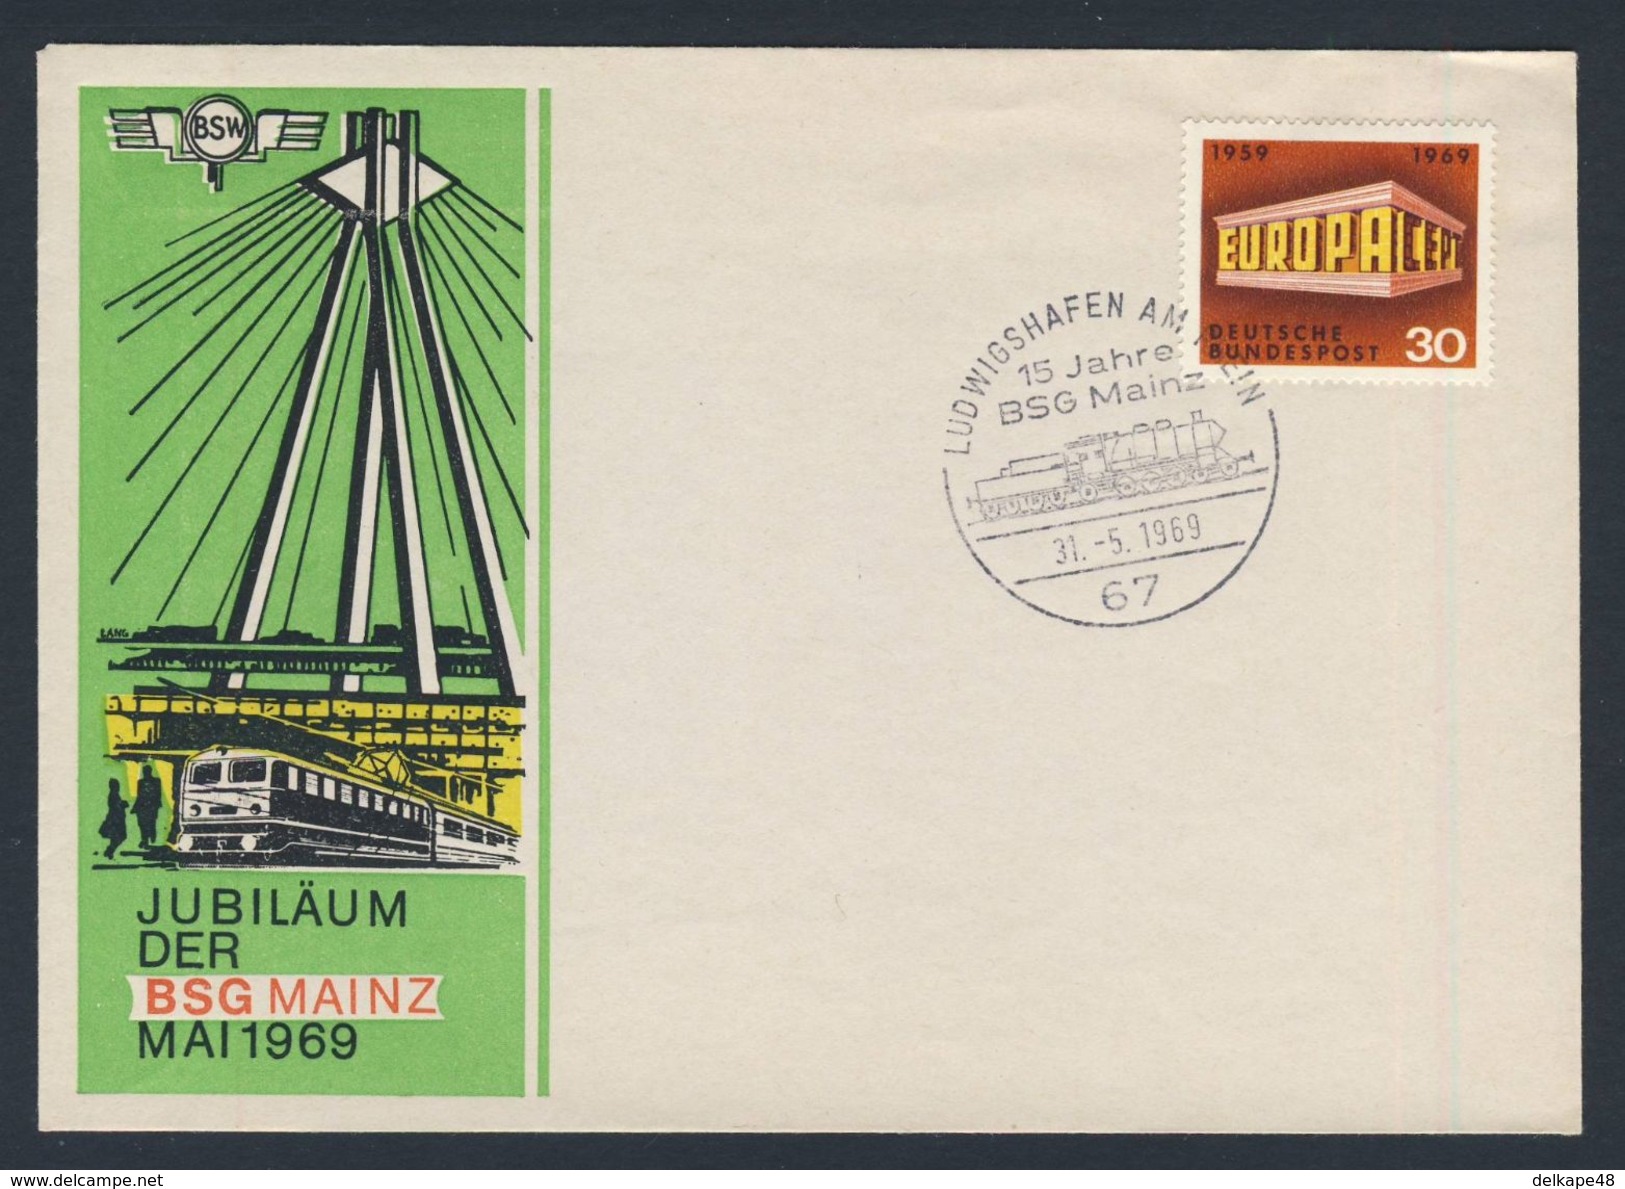 Deutschland Germany 1969 Cover / Brief / Lettre - Jubiläum BSG MAINZ - Briefmarkengemeinschaft / Stamp Community - Eisenbahnen